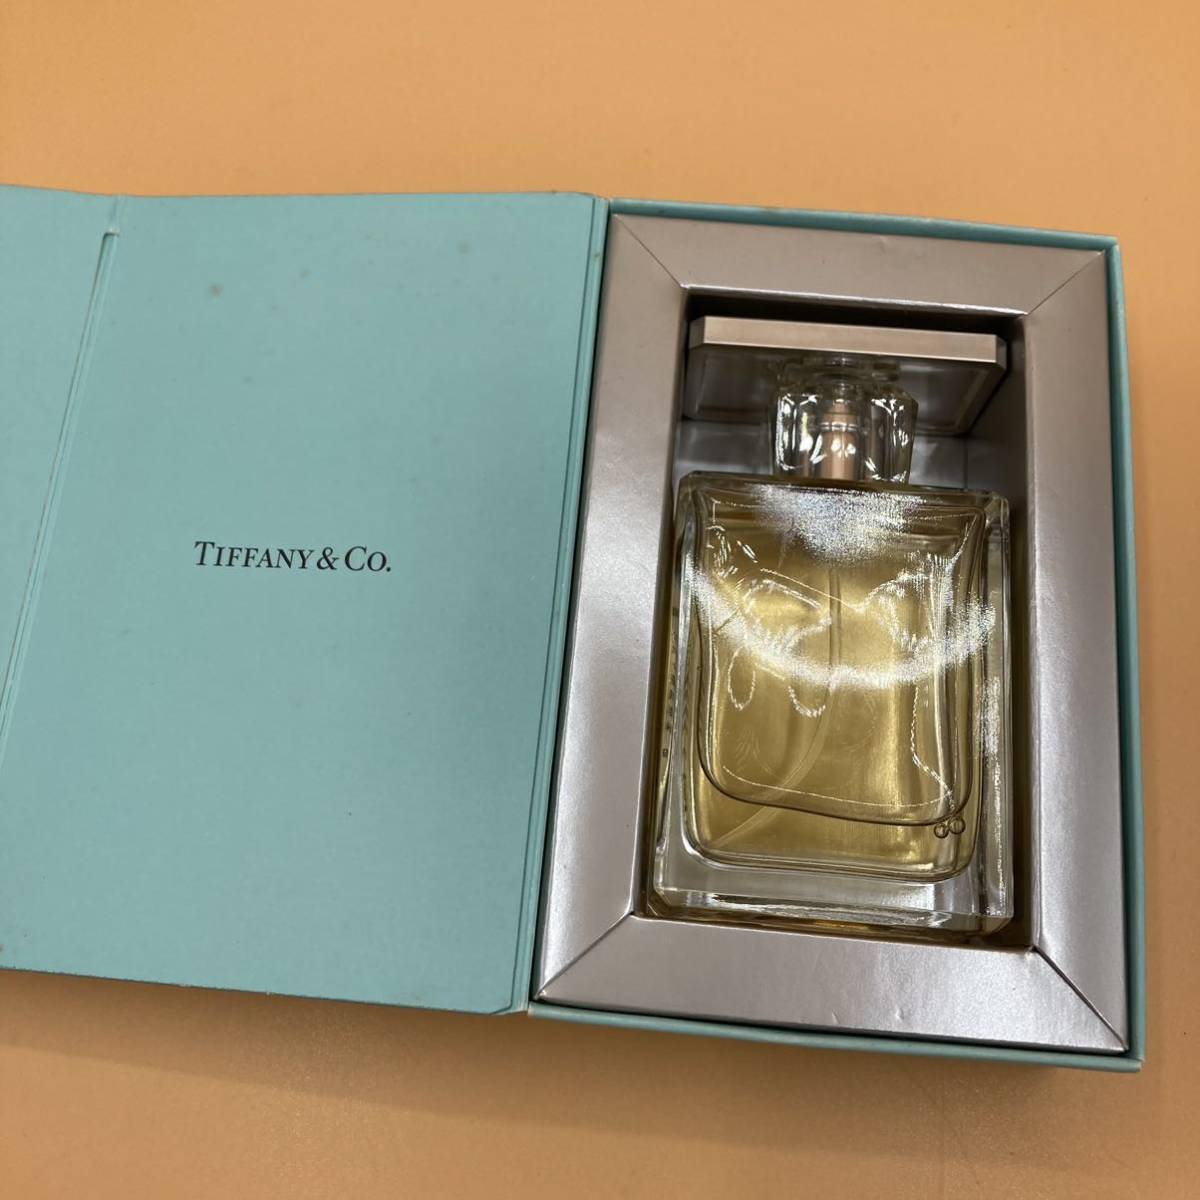 [2702][ почти новый товар с ящиком ] коробка повреждение иметь Tiffany духи 50ml чистый Tiffany o-do пуховка .-mTiffany&Co. аромат косметика 